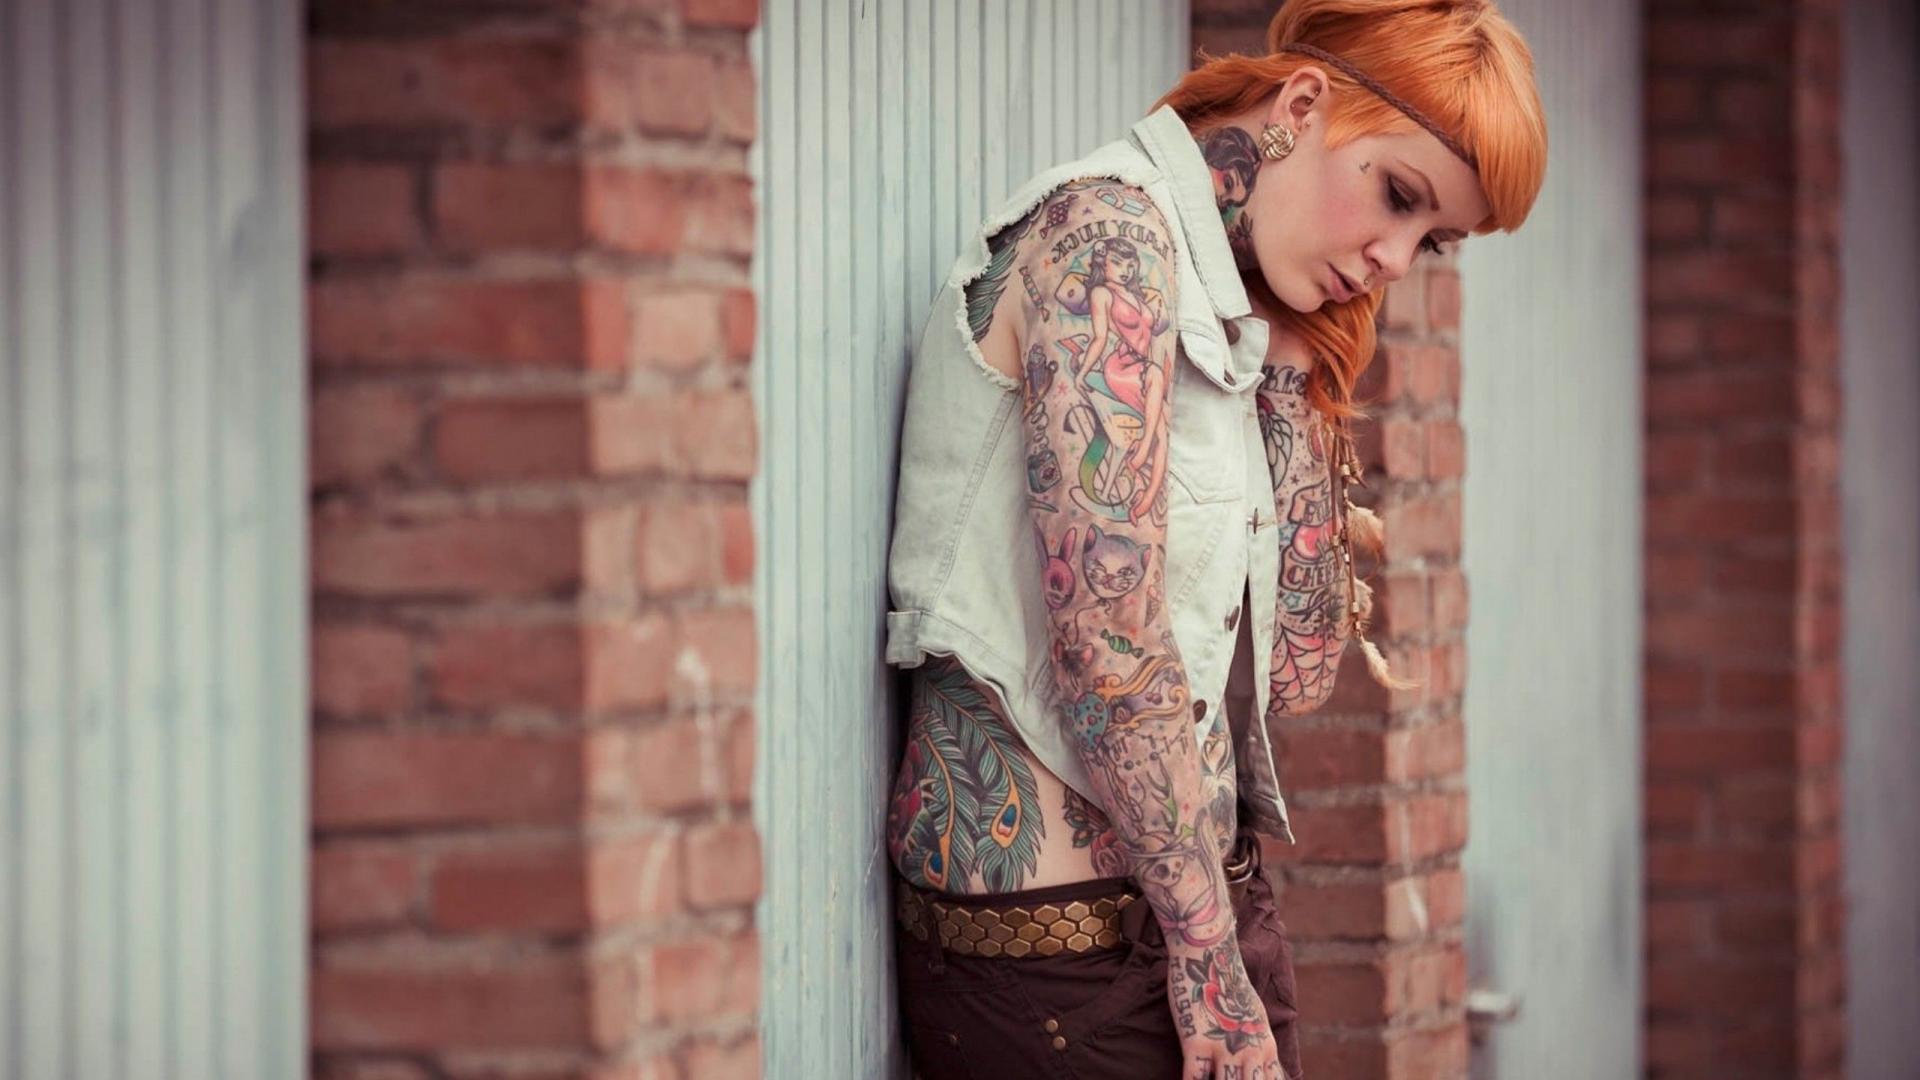 Tattoo Art Wallpaper Hd: Tattoo Girls Designs Hd Wallpaper BestHD ...